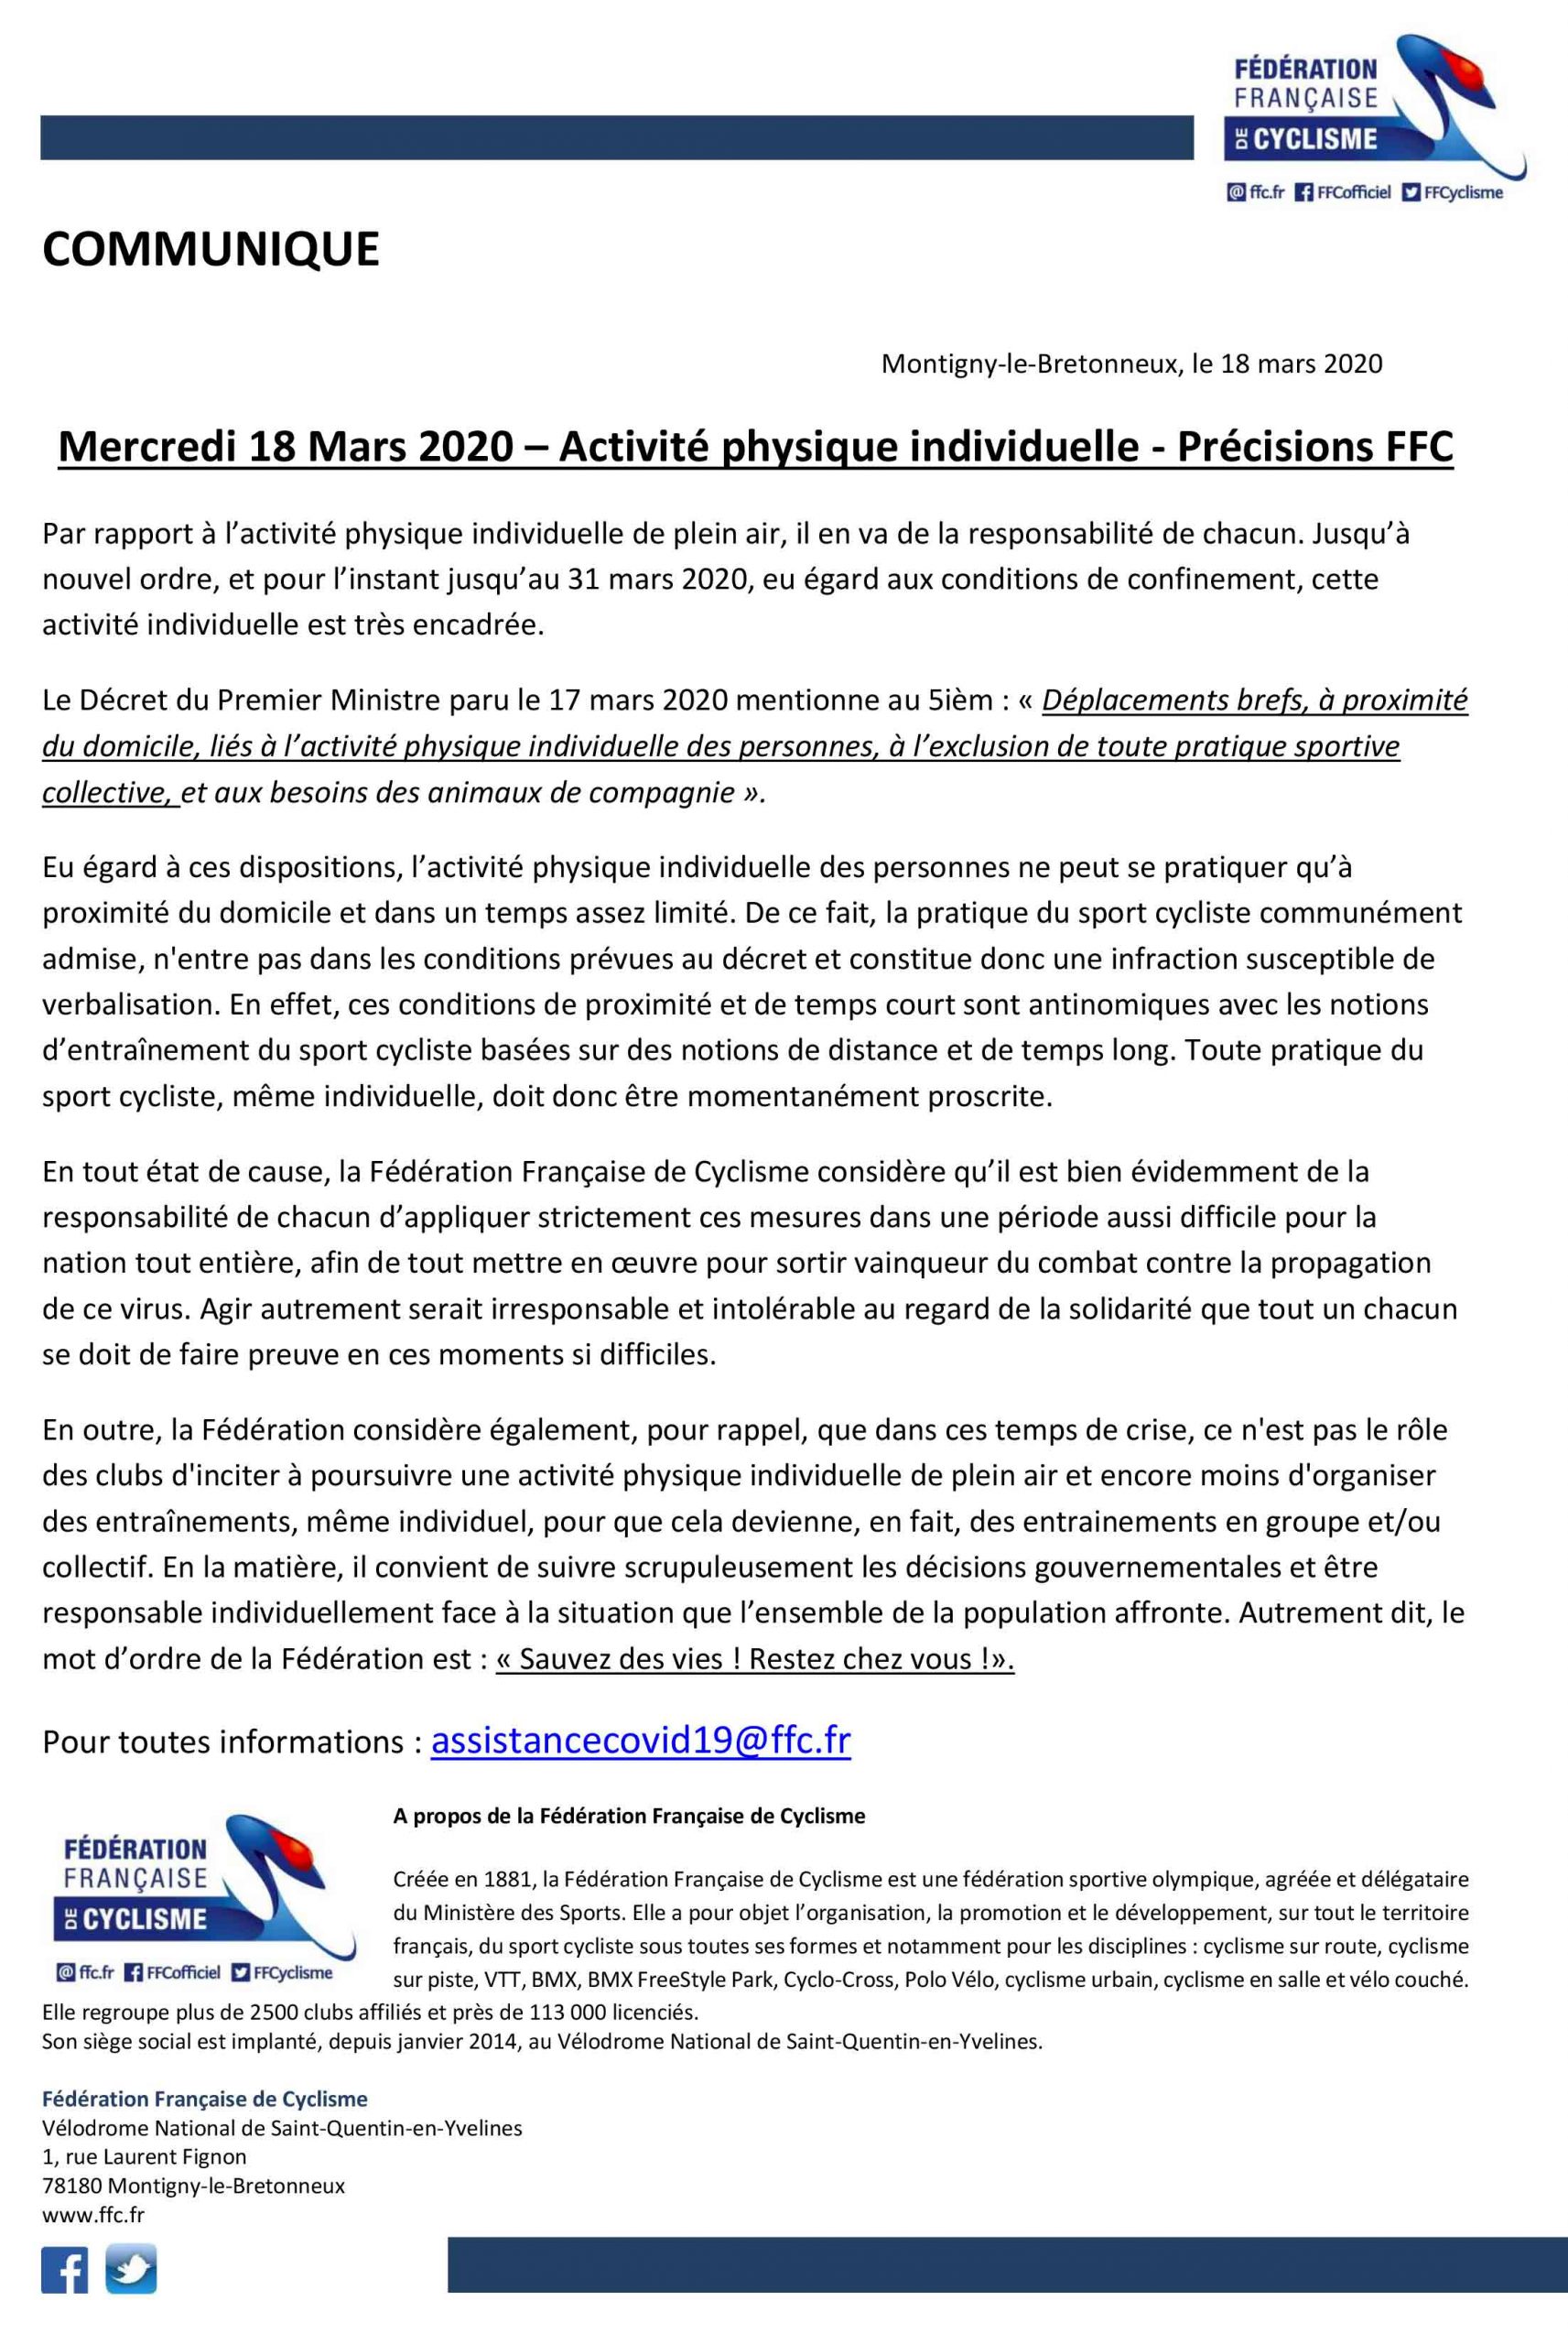 Coronavirus : communiqué de presse de la Fédération Française de Cyclisme